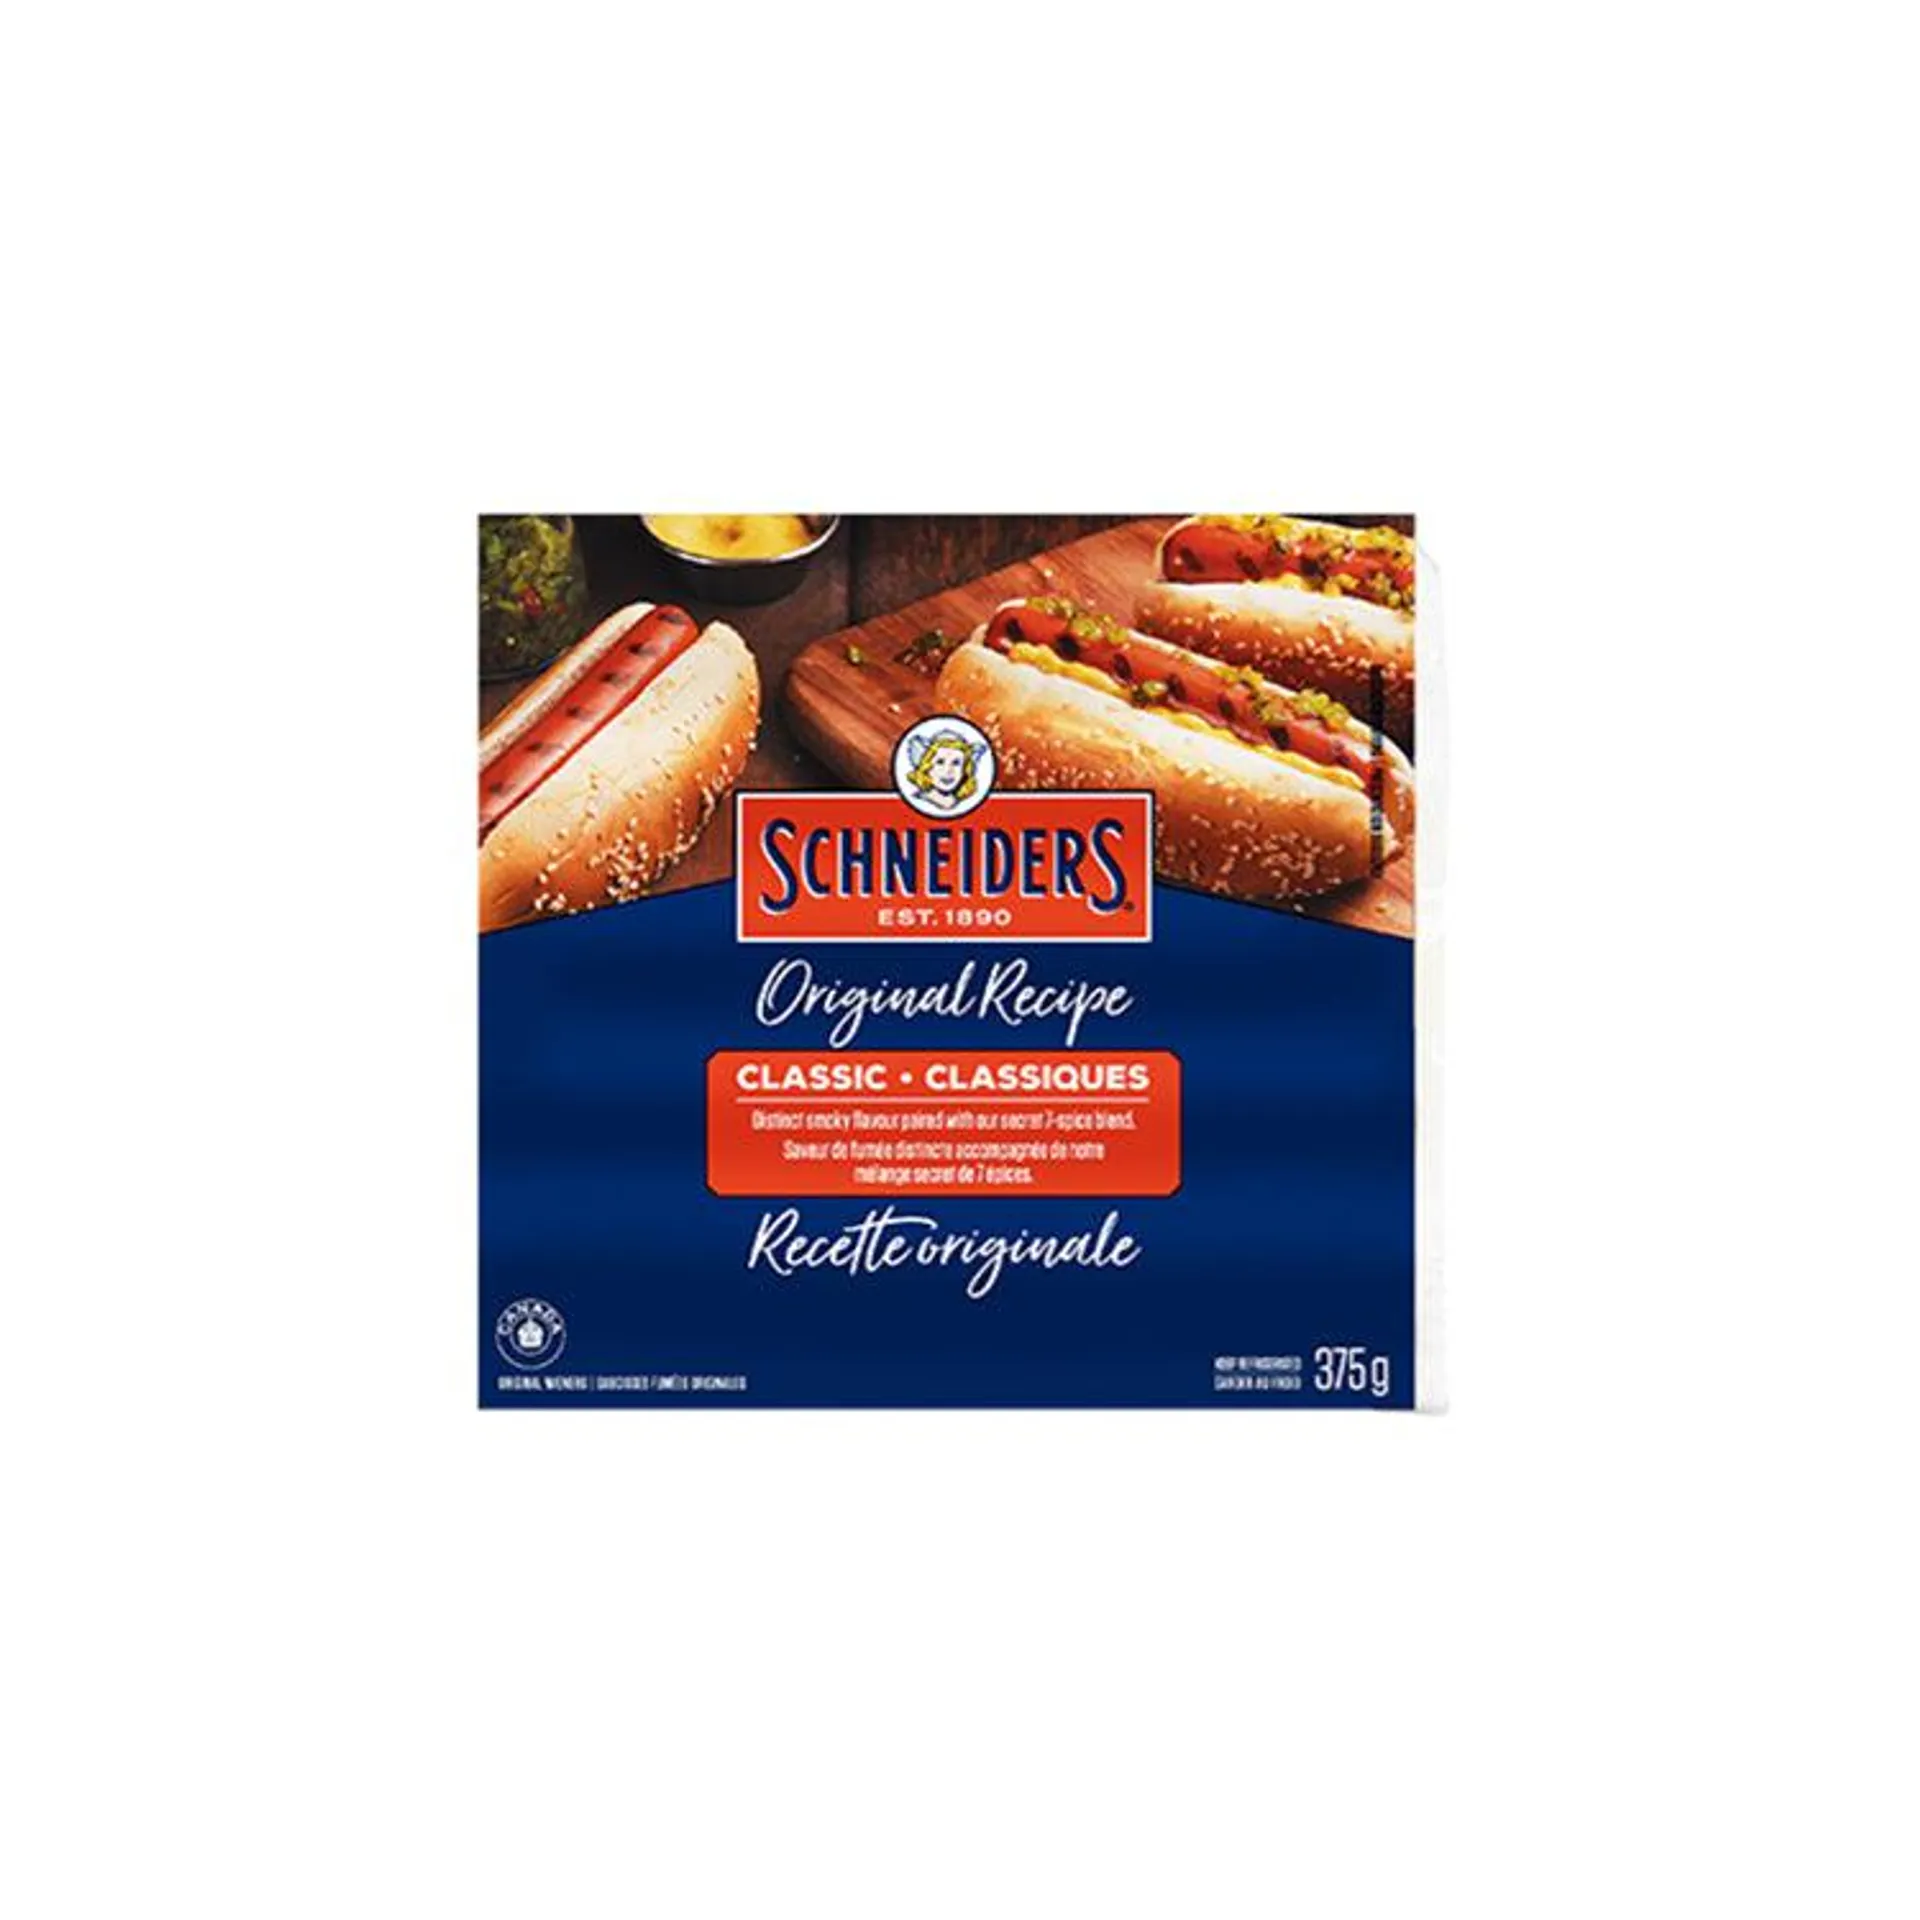 Schneiders Wieners Original Recipe 375g